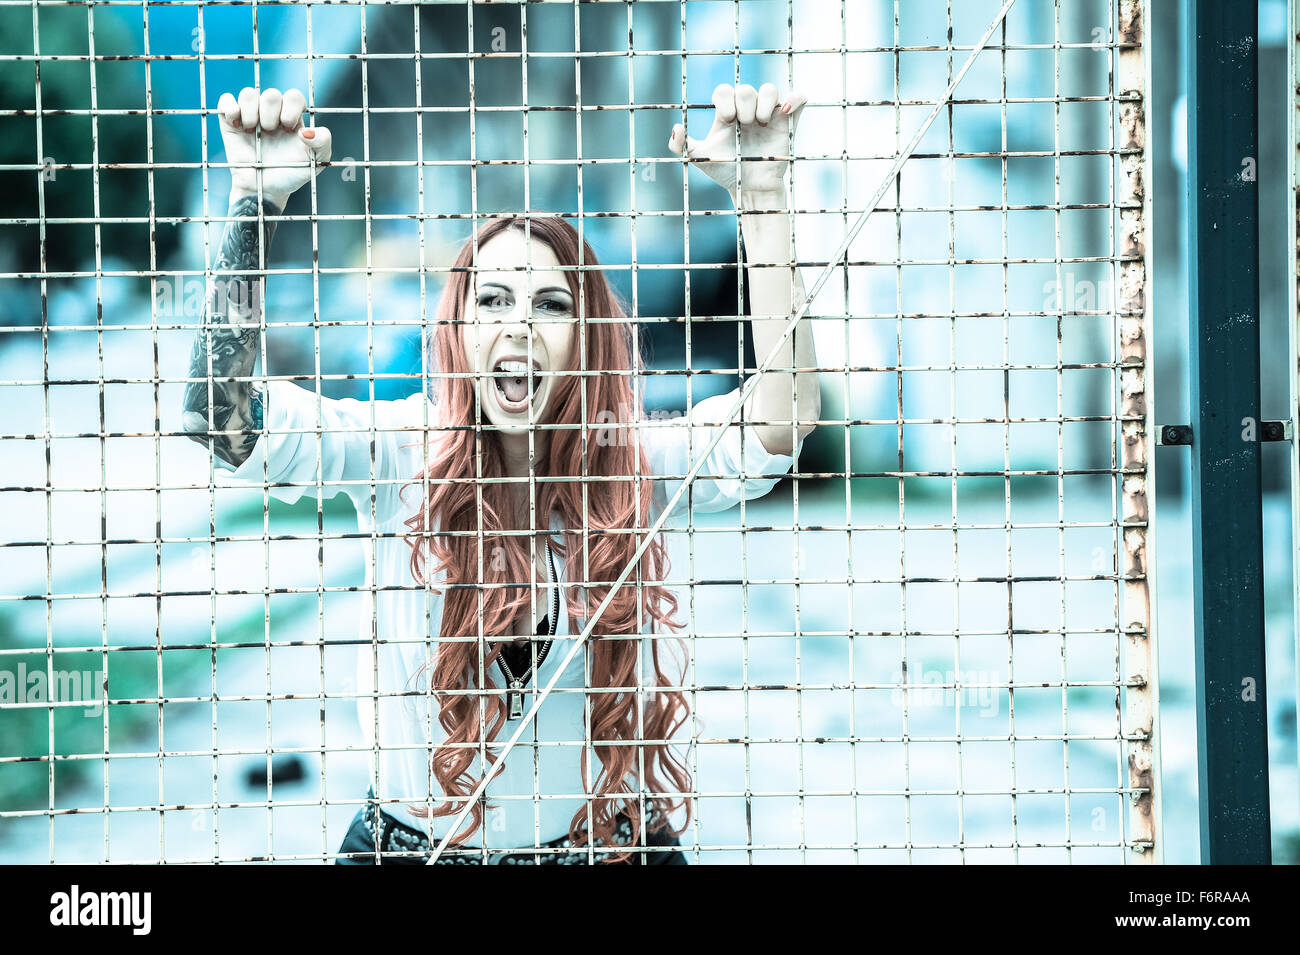 Giovane donna con lunghi capelli rossi e un tatuaggio urlando dietro le sbarre Foto Stock